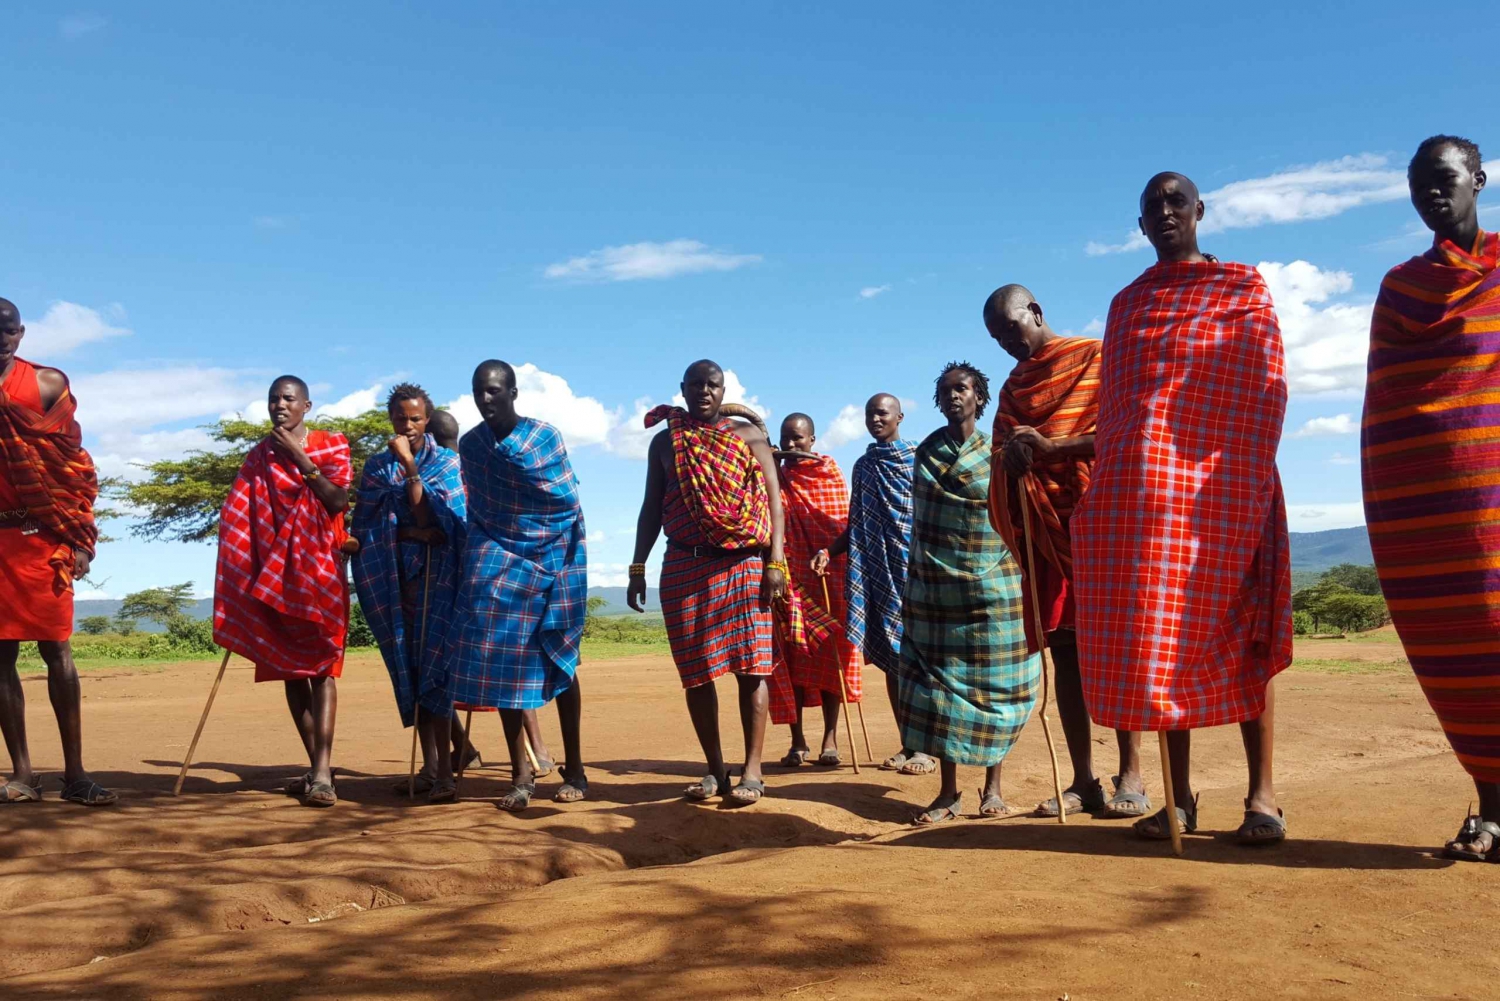 Maasai Mara 3-Day Budget Safari